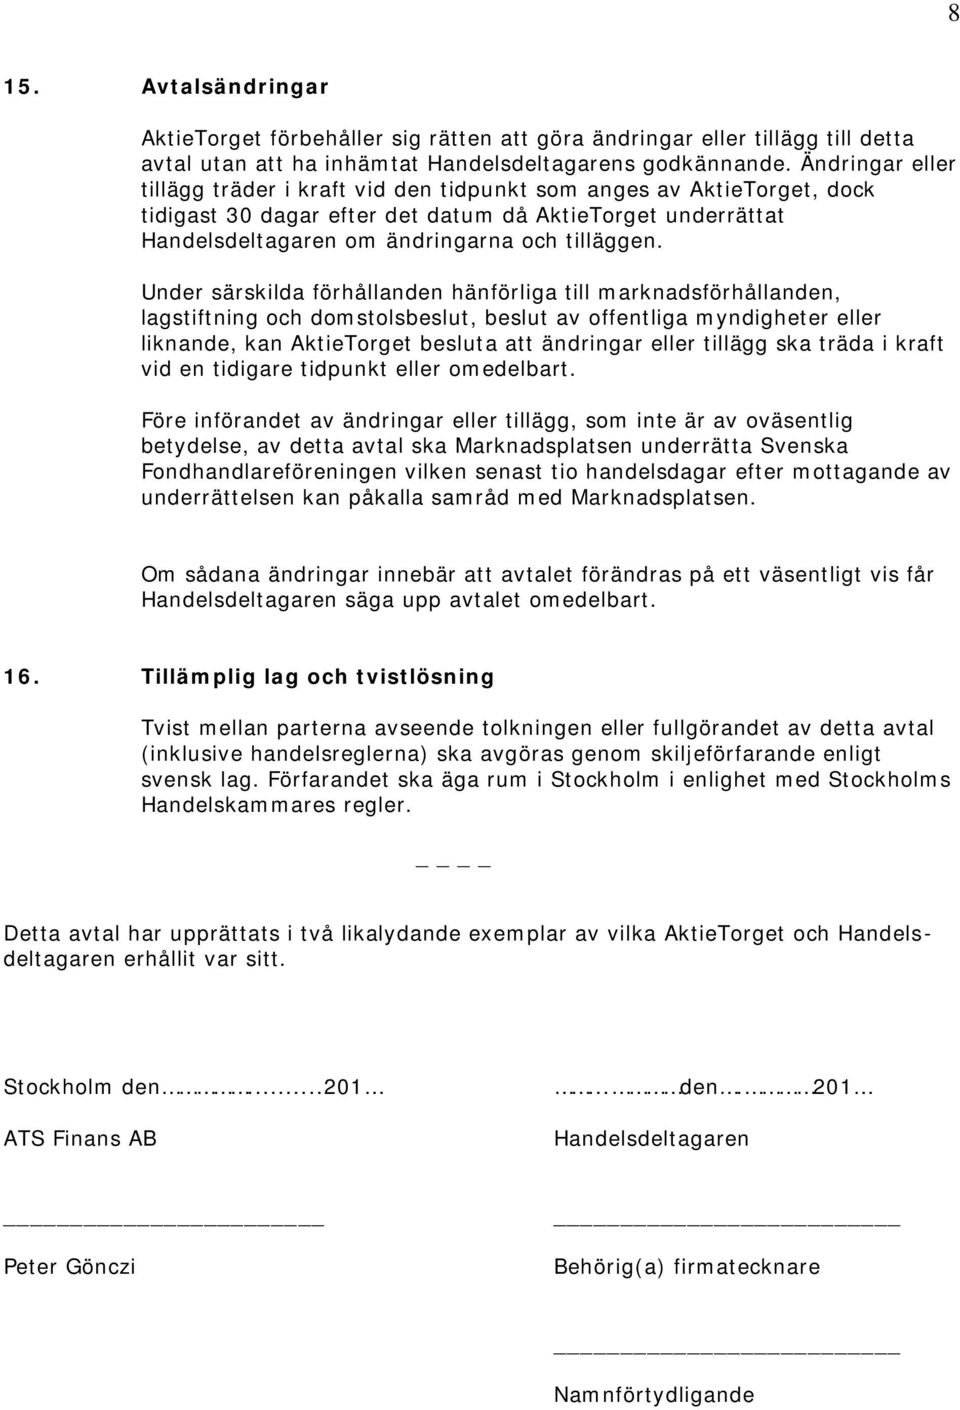 ATS Finans AB, , med bifirman AktieTorget ( AktieTorget ) - PDF ...